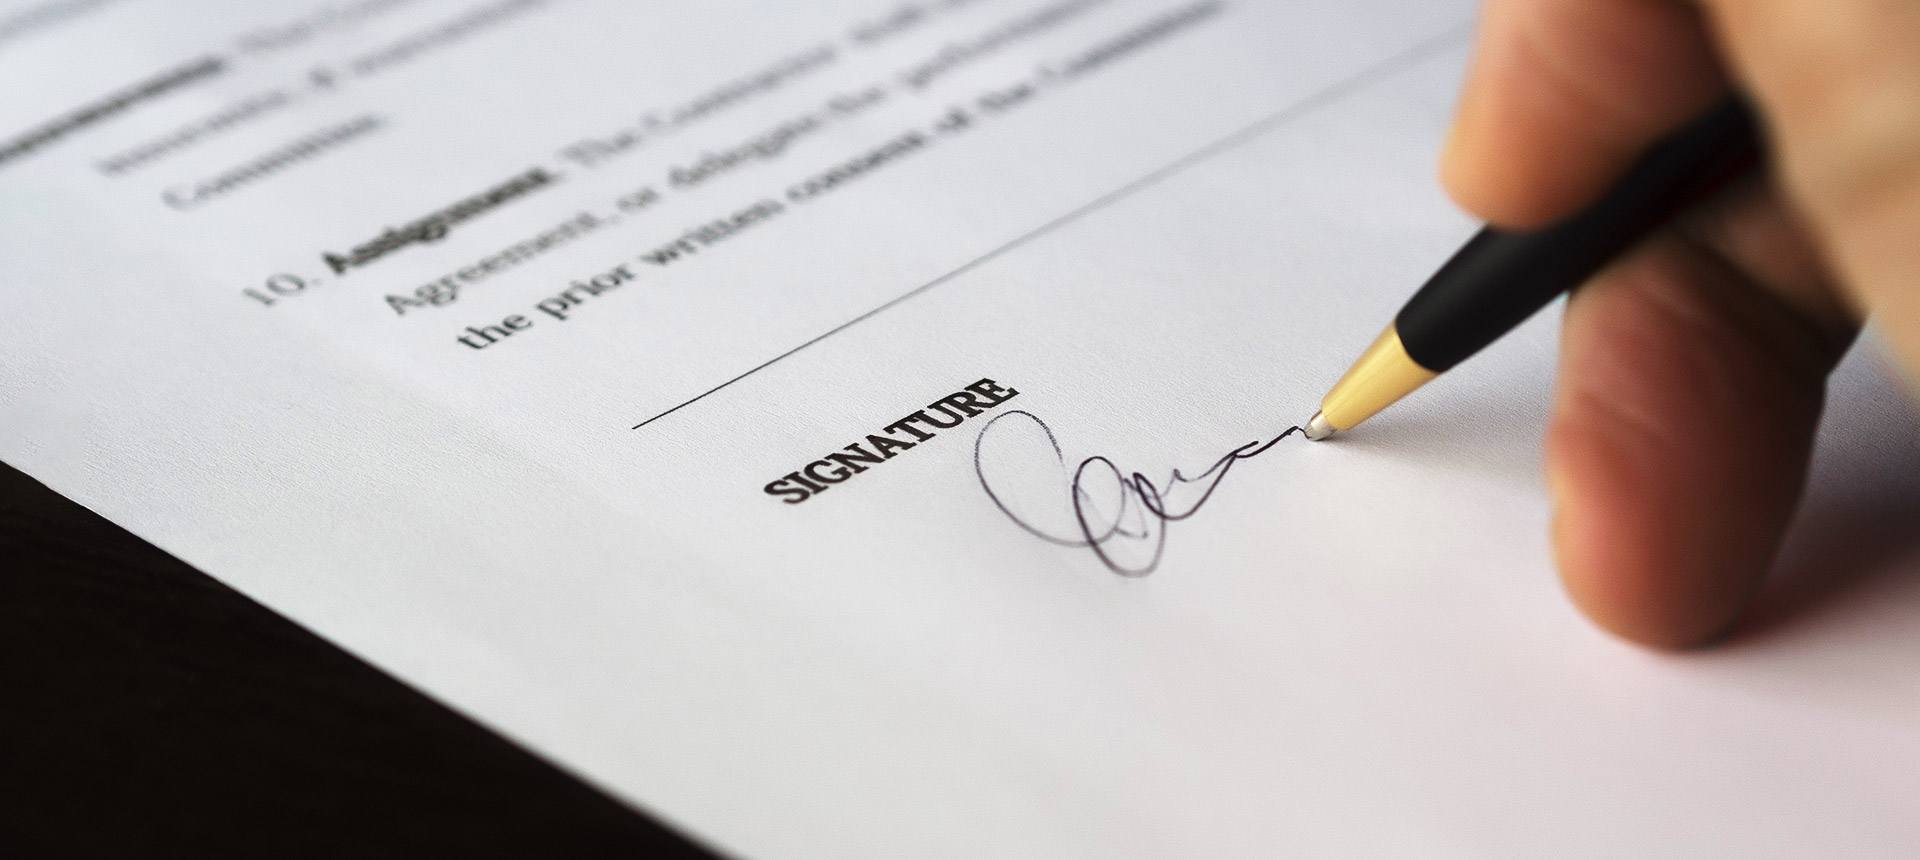 webinar jcommerce agreements in outsourcing